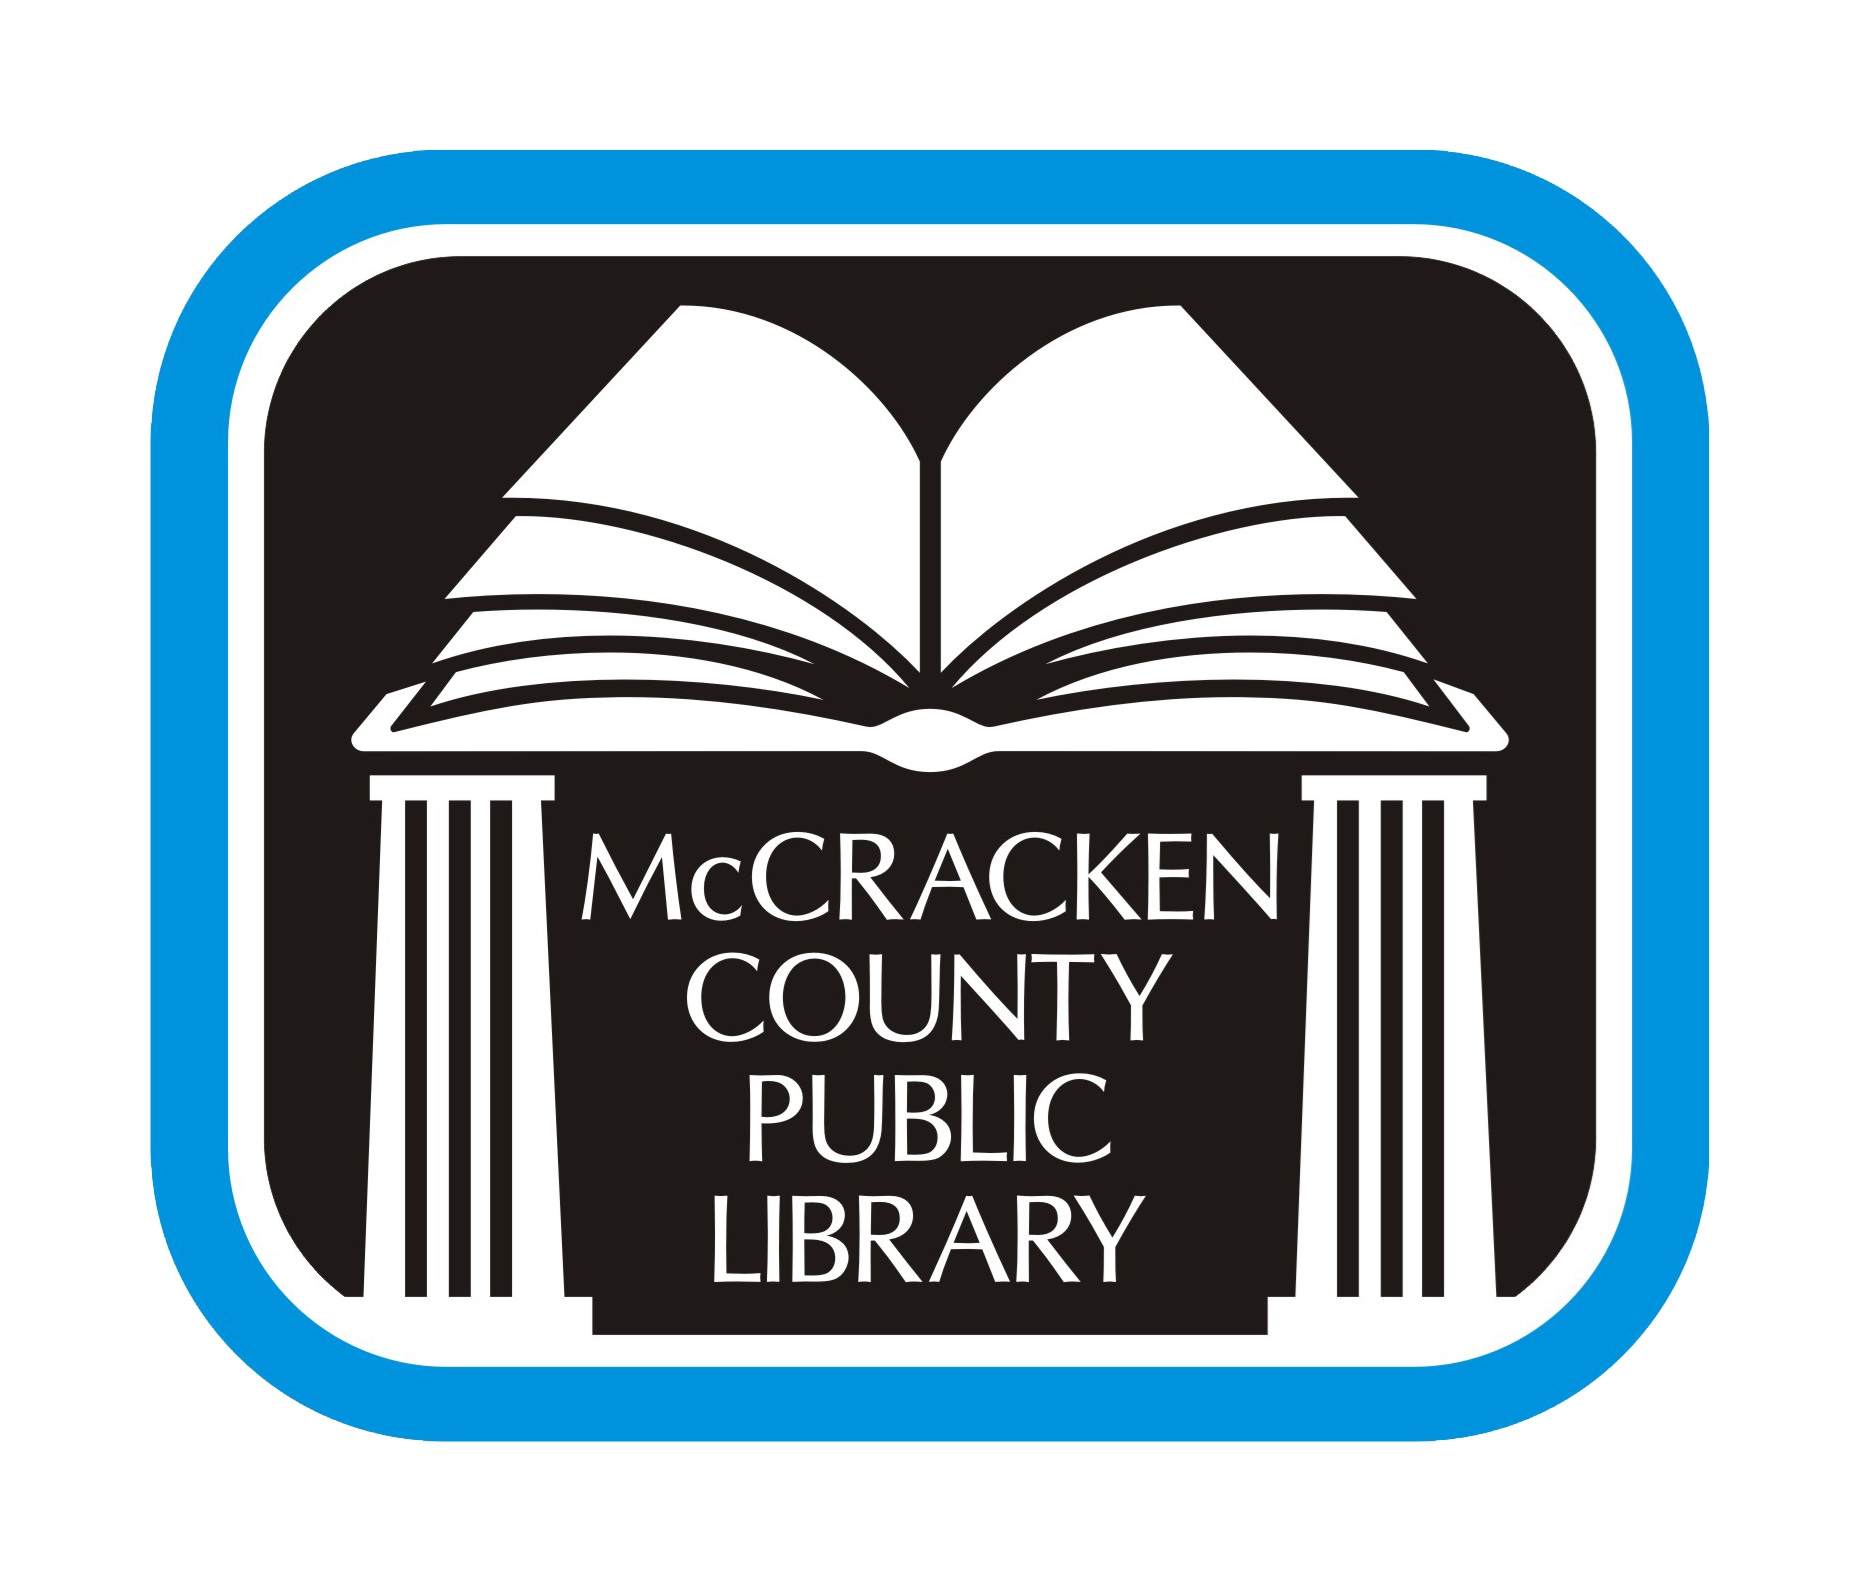 McCracken County Public Library